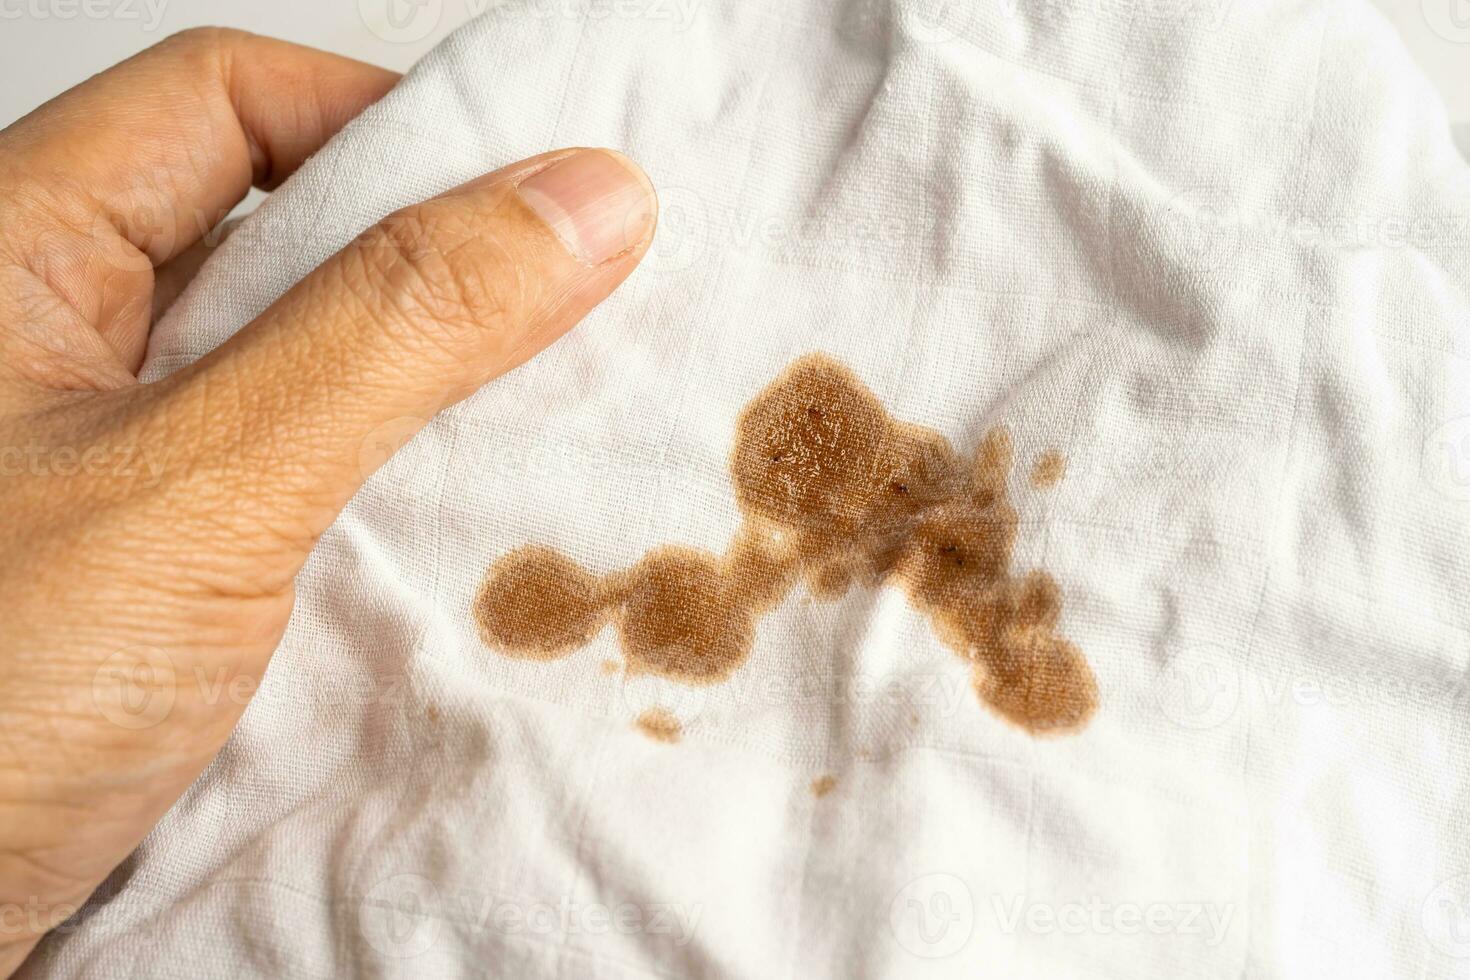 mancha de molho de tomate sujo ou ketchup em pano para lavar com sabão em pó, limpando o conceito de trabalho doméstico. foto